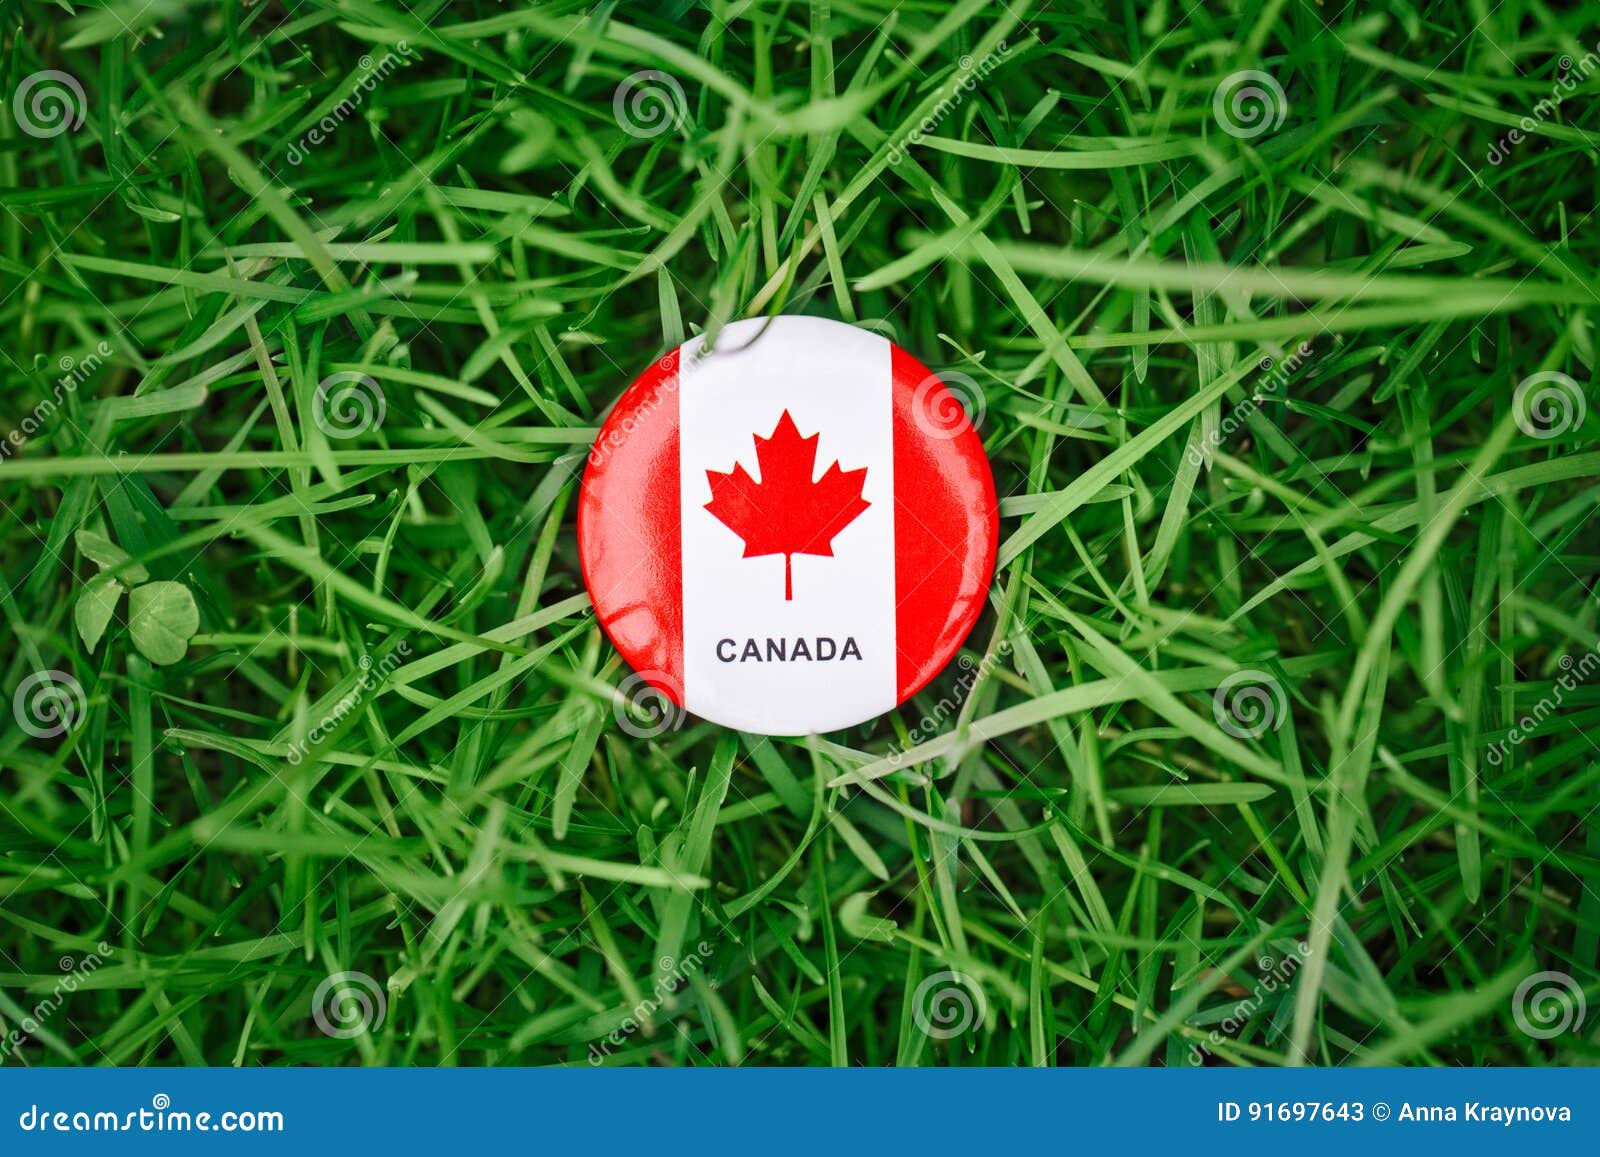 Cờ Canada có ba nhánh lá phía trên và là một biểu tượng của sự liên minh giữa các vùng lãnh thổ của đất nước này. Sự kết hợp giữa màu đỏ và trắng tượng trưng cho niềm tự hào, lòng trung thành và tình yêu đối với đất nước. Hãy xem hình ảnh liên quan để hiểu thêm về cờ Canada.